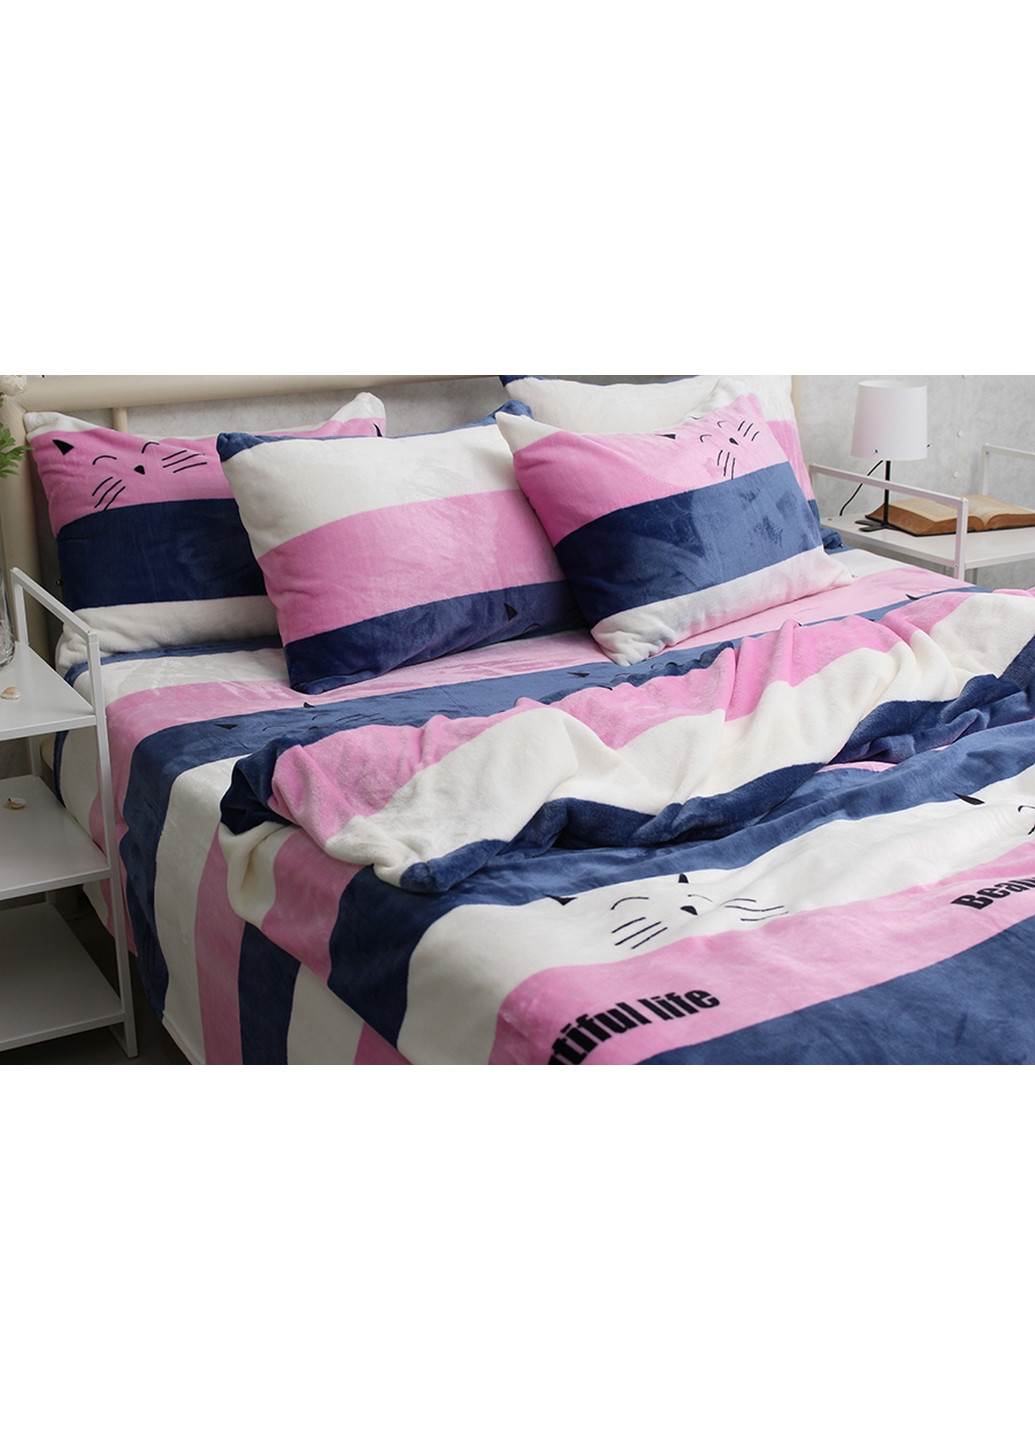 Комплект постельного белья микрофибра 1,5-спальный Tag (275071439)